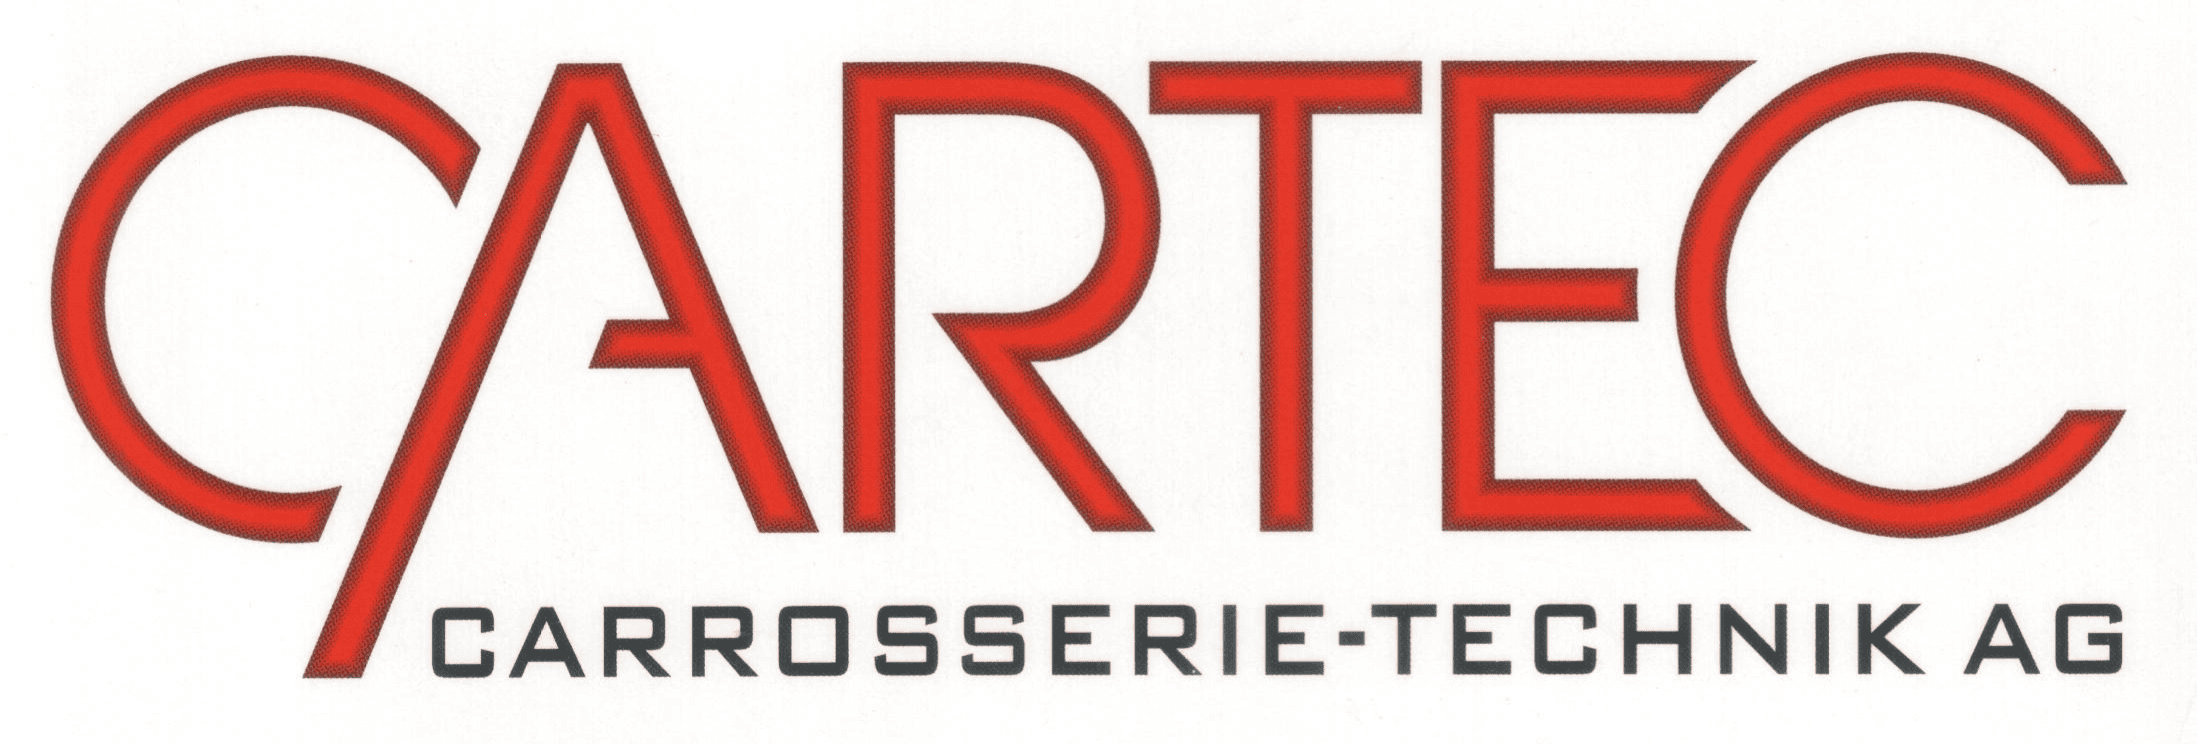 Cartec Carrosserie-Technik AG